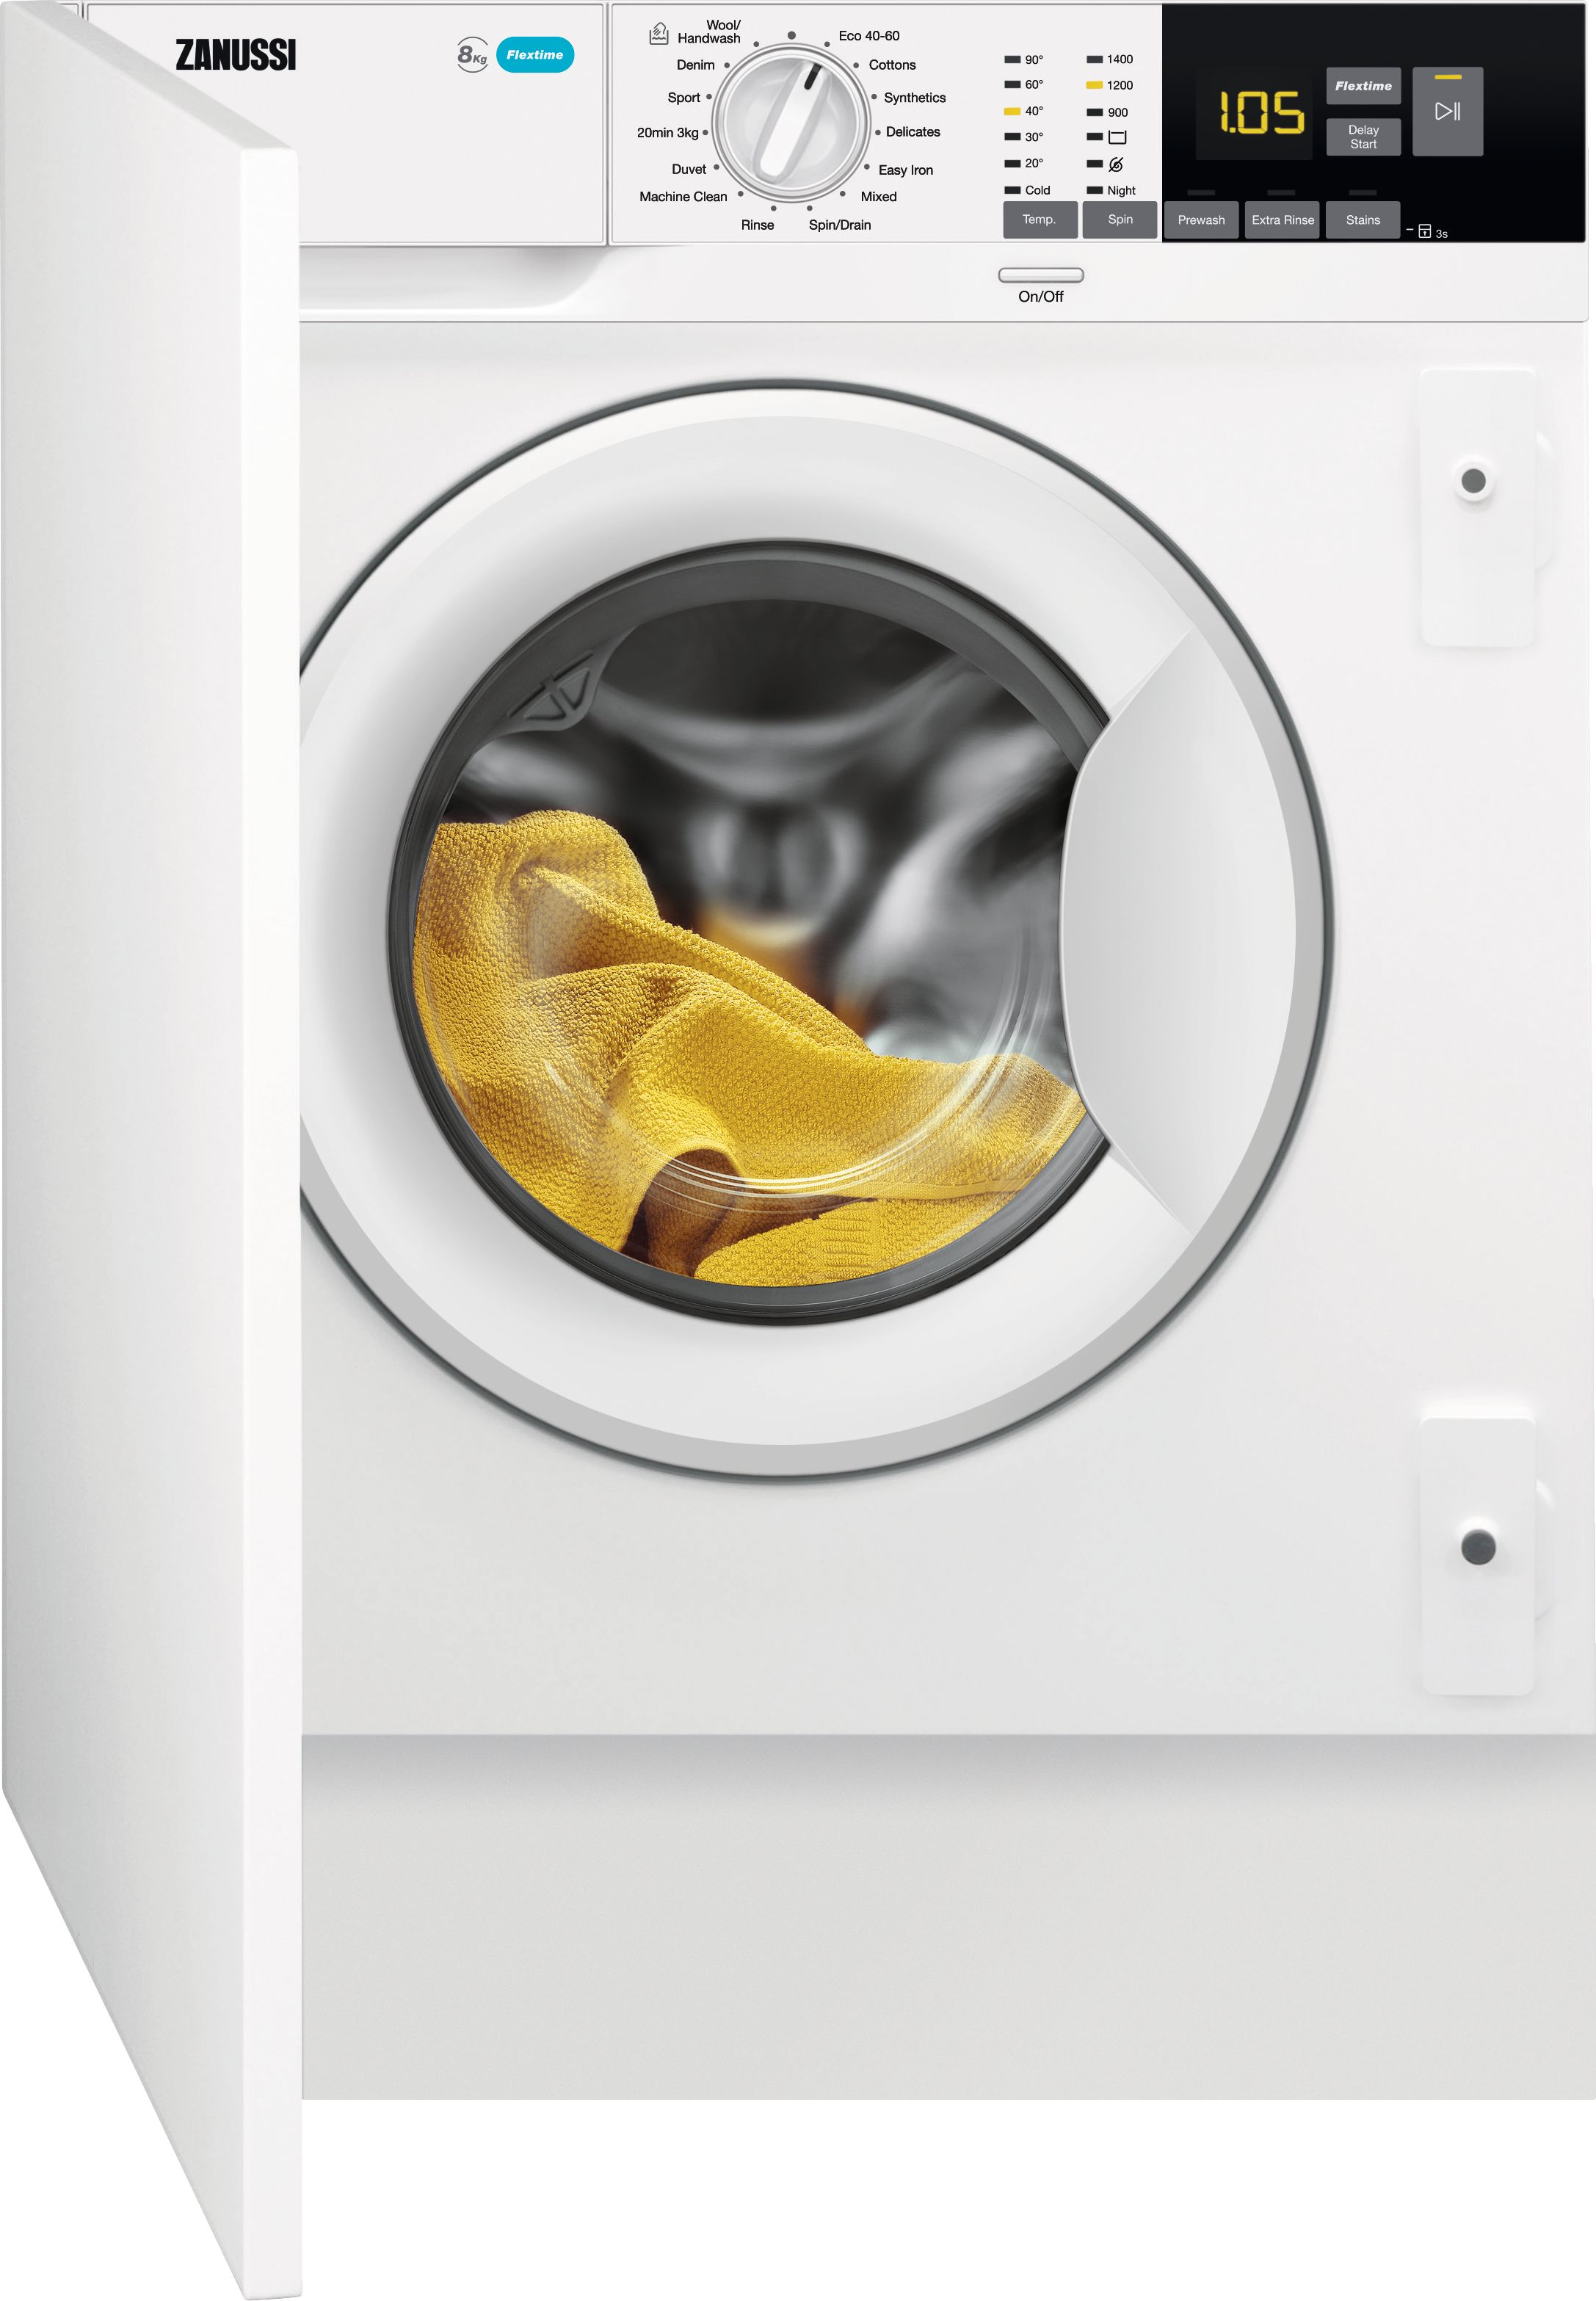 Zanussi ZW84PCBI Integrated 8kg Washing Machine with 1400 rpm - White - B Rated, White